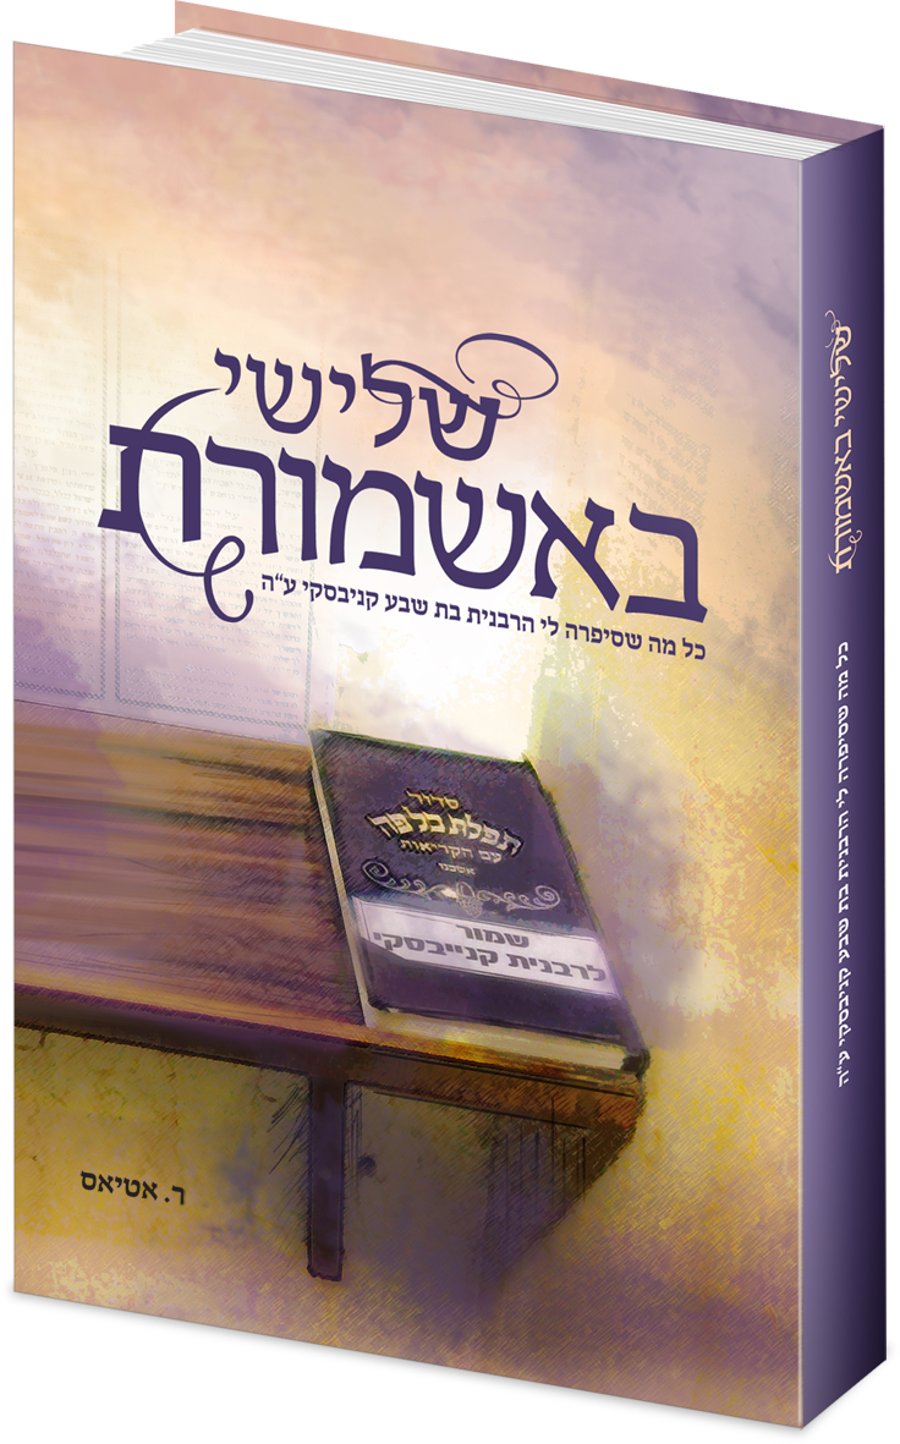 "שלישי באשמורת" - הספר של הרבנית קניבסקי ע"ה